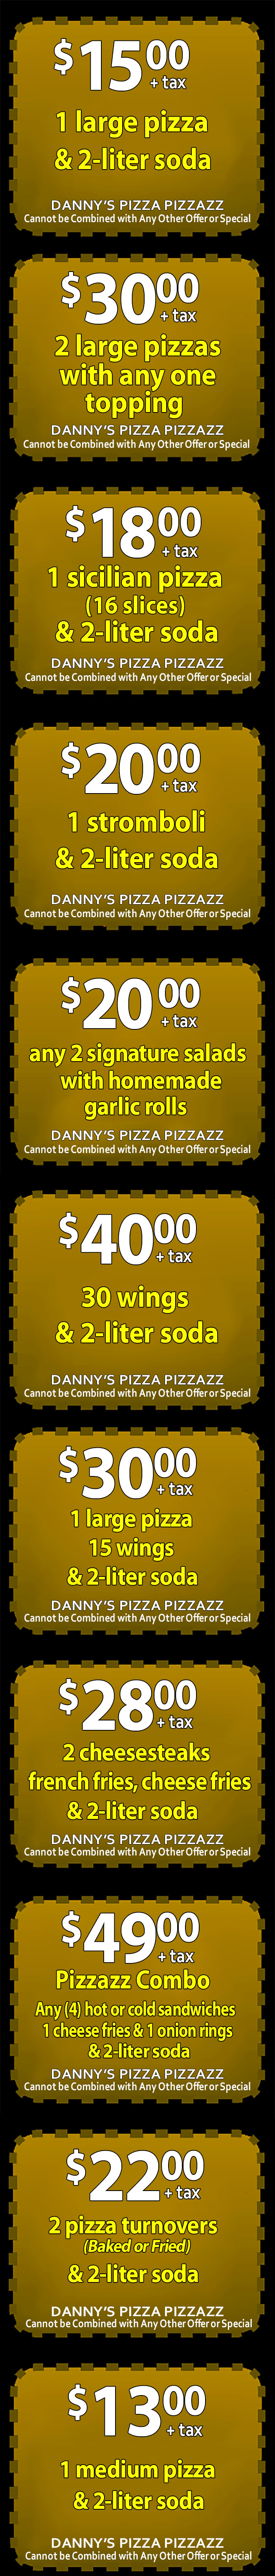 dannys-pizza-pizzazz-millville-nj mobile coupons